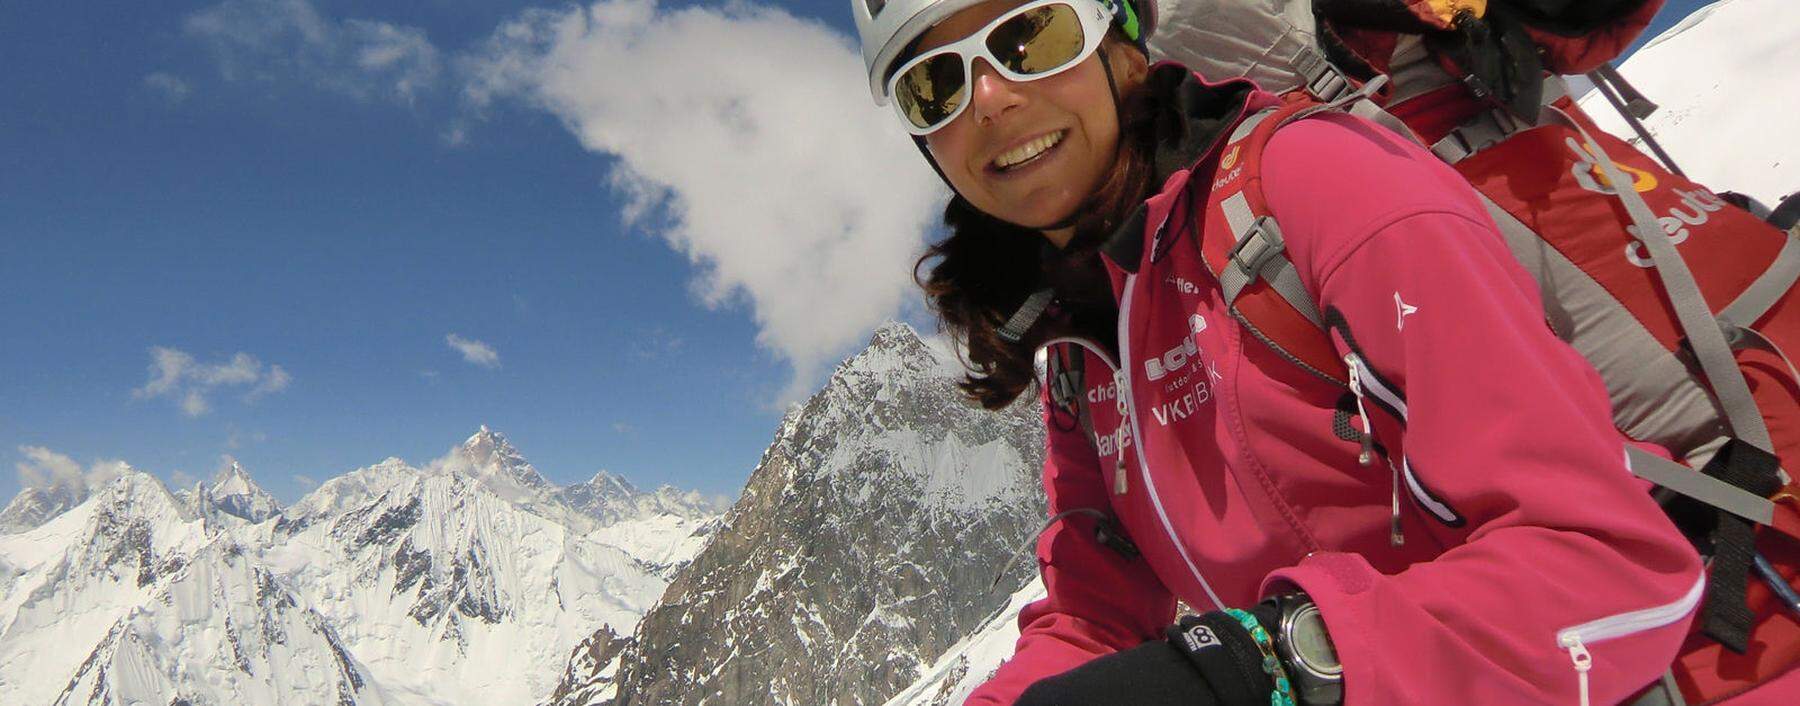 Die höchsten Berge sind ihre Lehrmeister. Als erste Frau schafft es Gerlinde Kaltenbrunner, mit Willensstärke und Respekt vor der Natur sämtliche Achttausender-Gipfel zu besteigen.